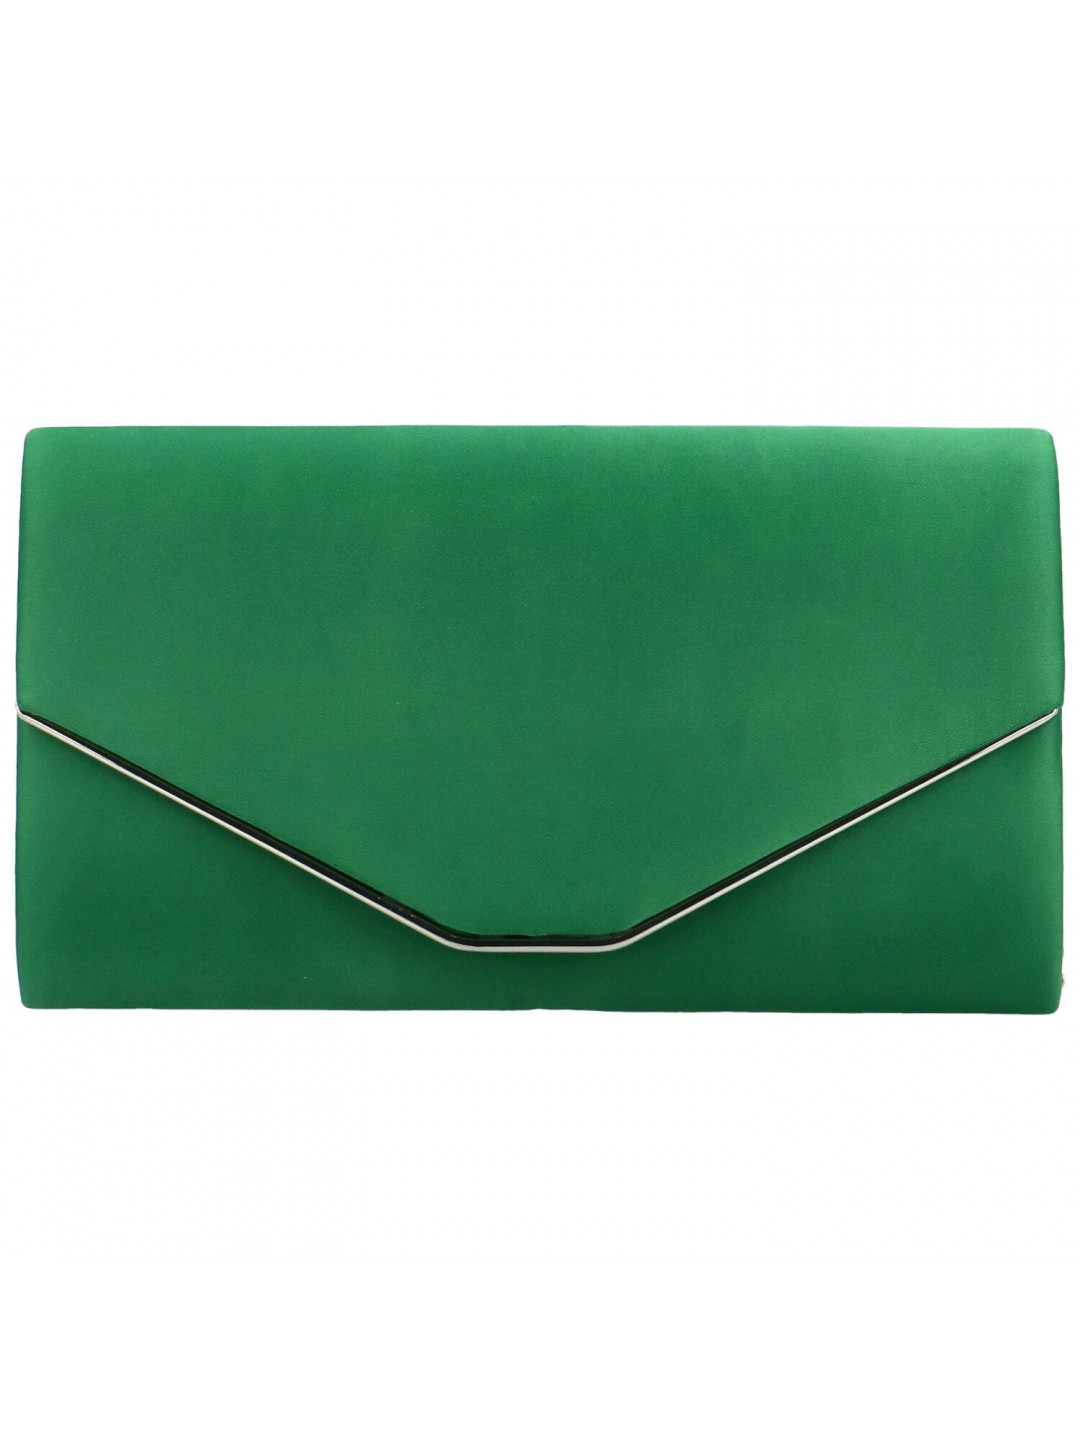 Luxusní společenská kabelka Gisella zelená